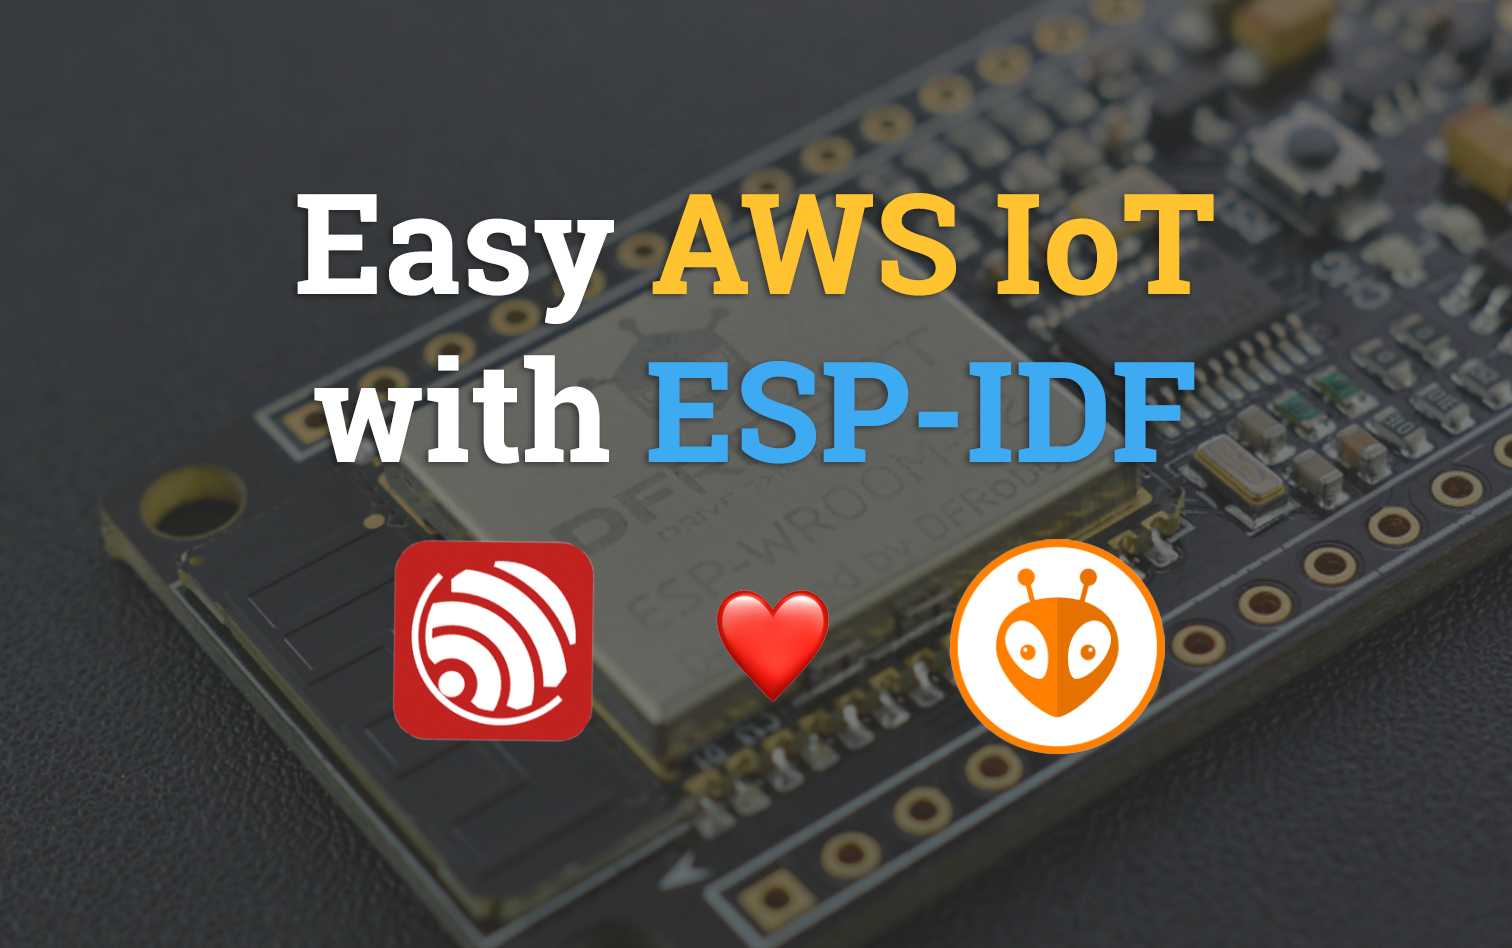 Easy AWS IoT with ESP-IDF